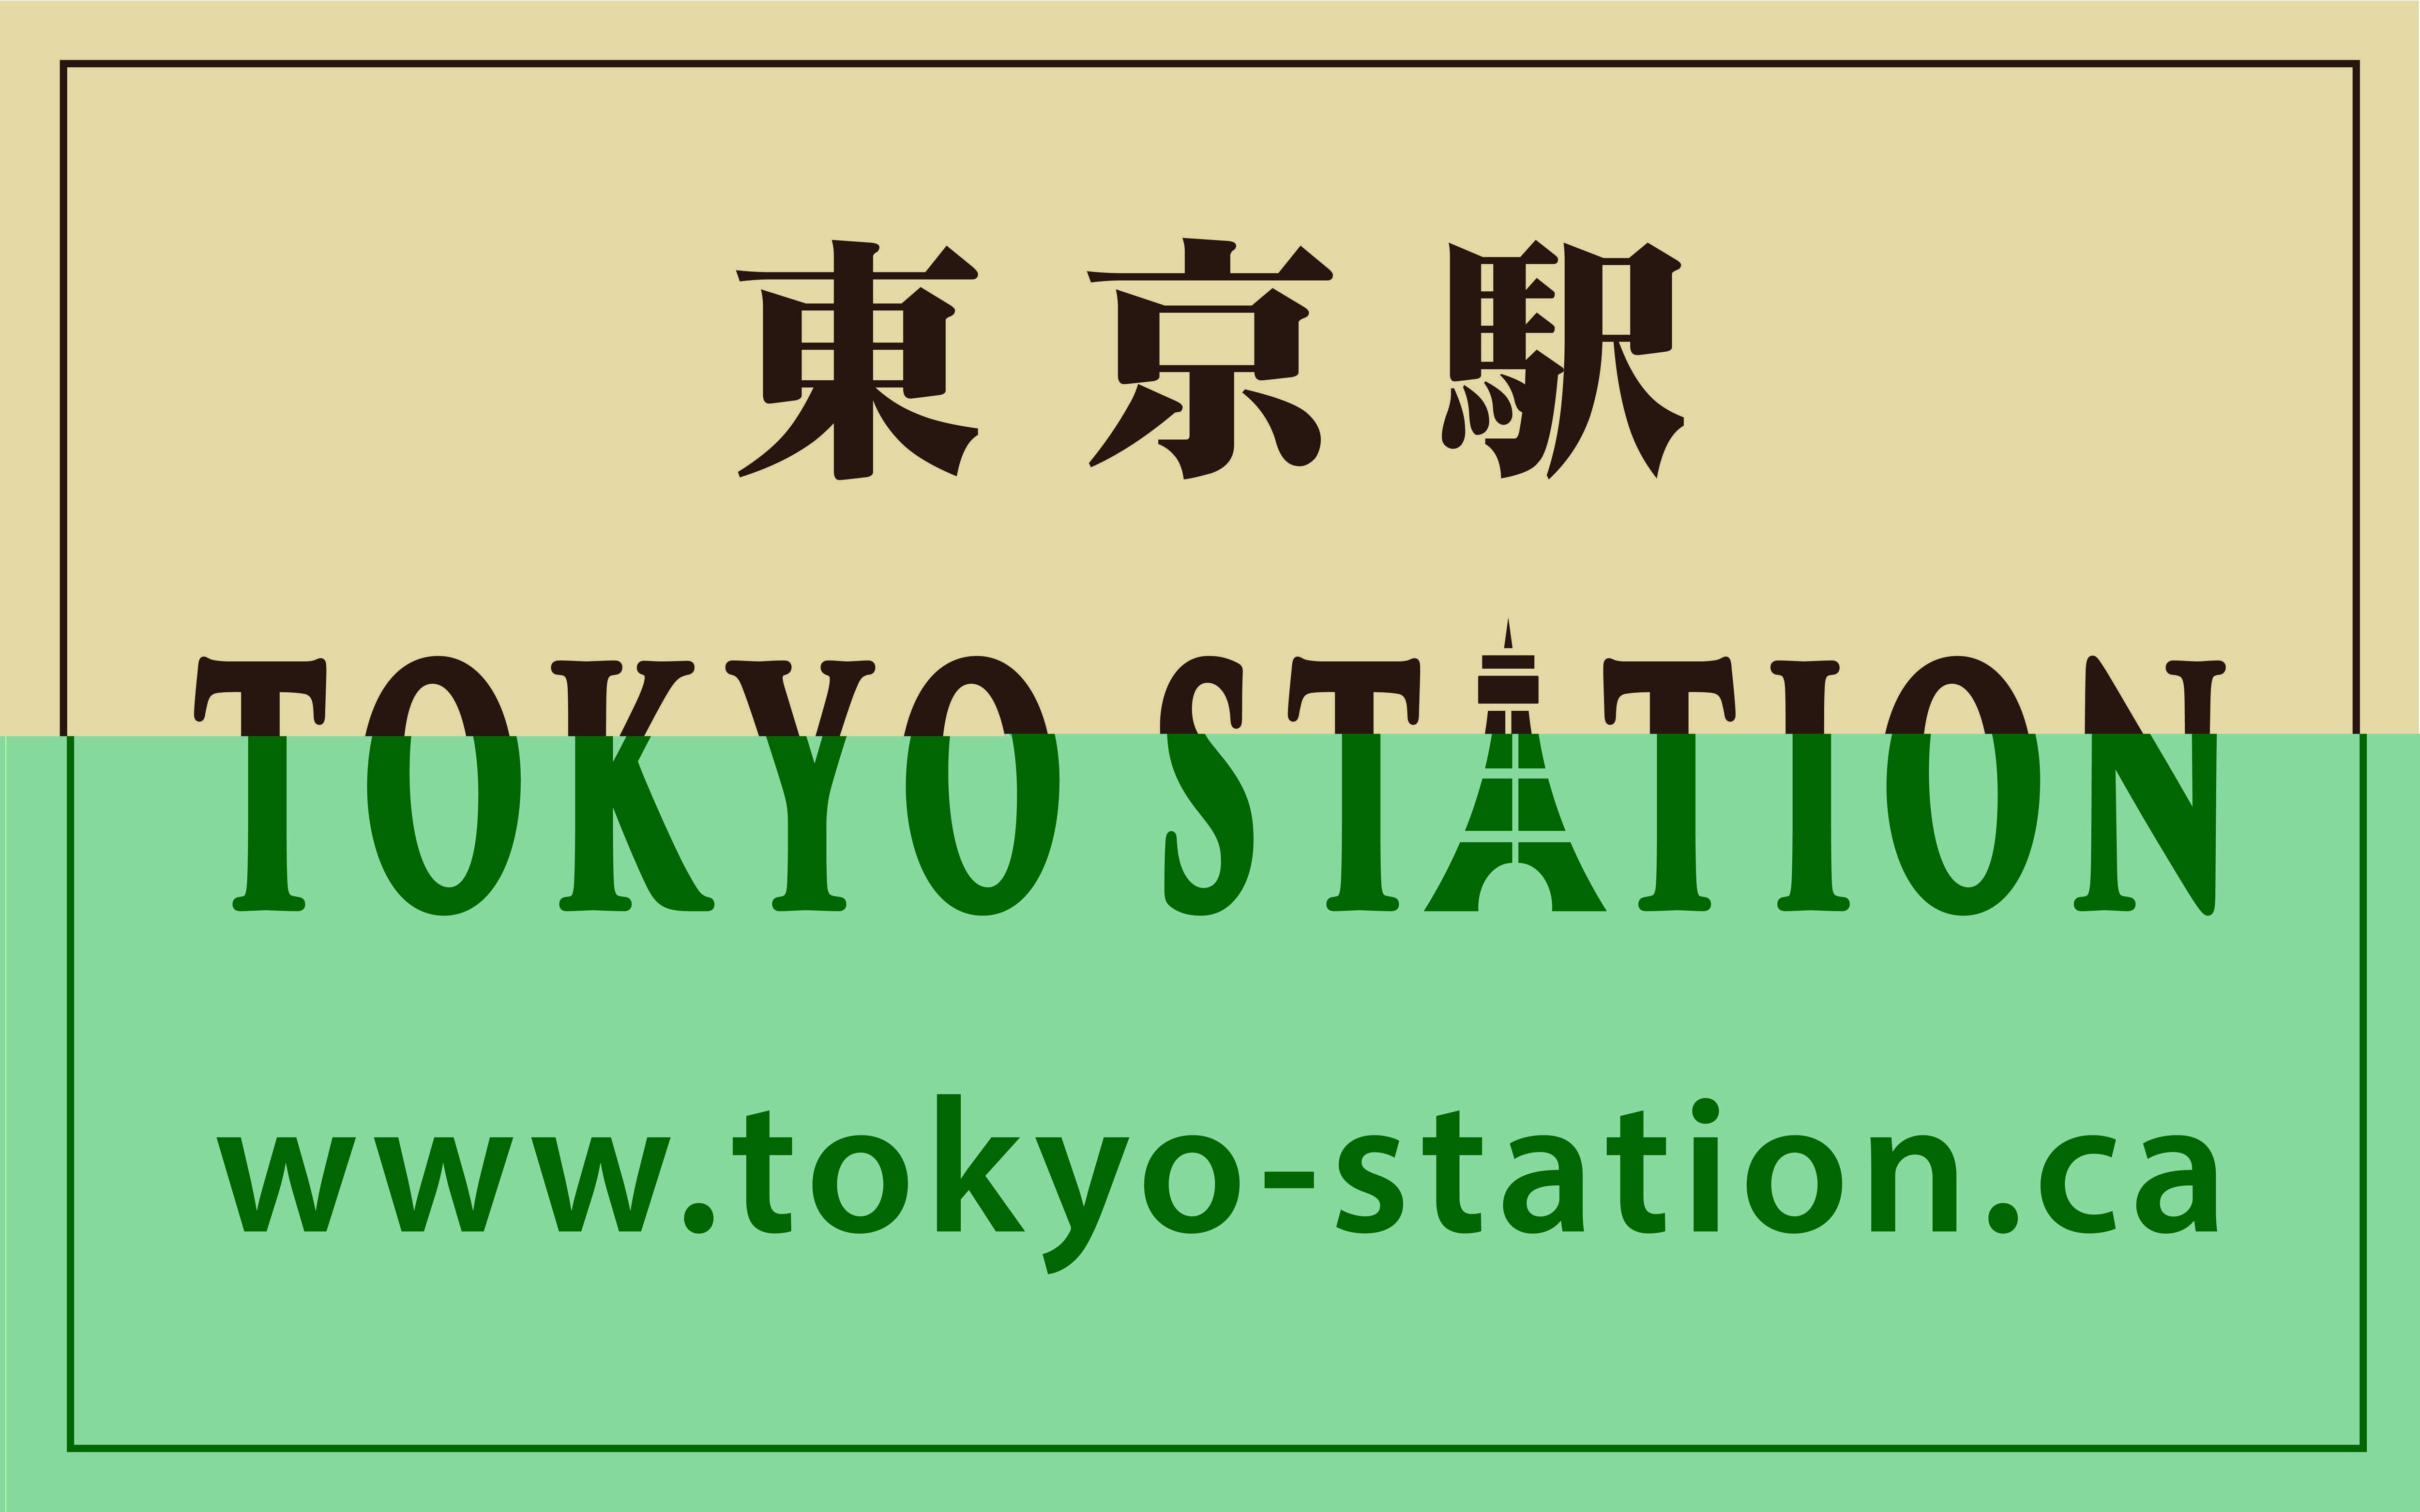 Toyko Station